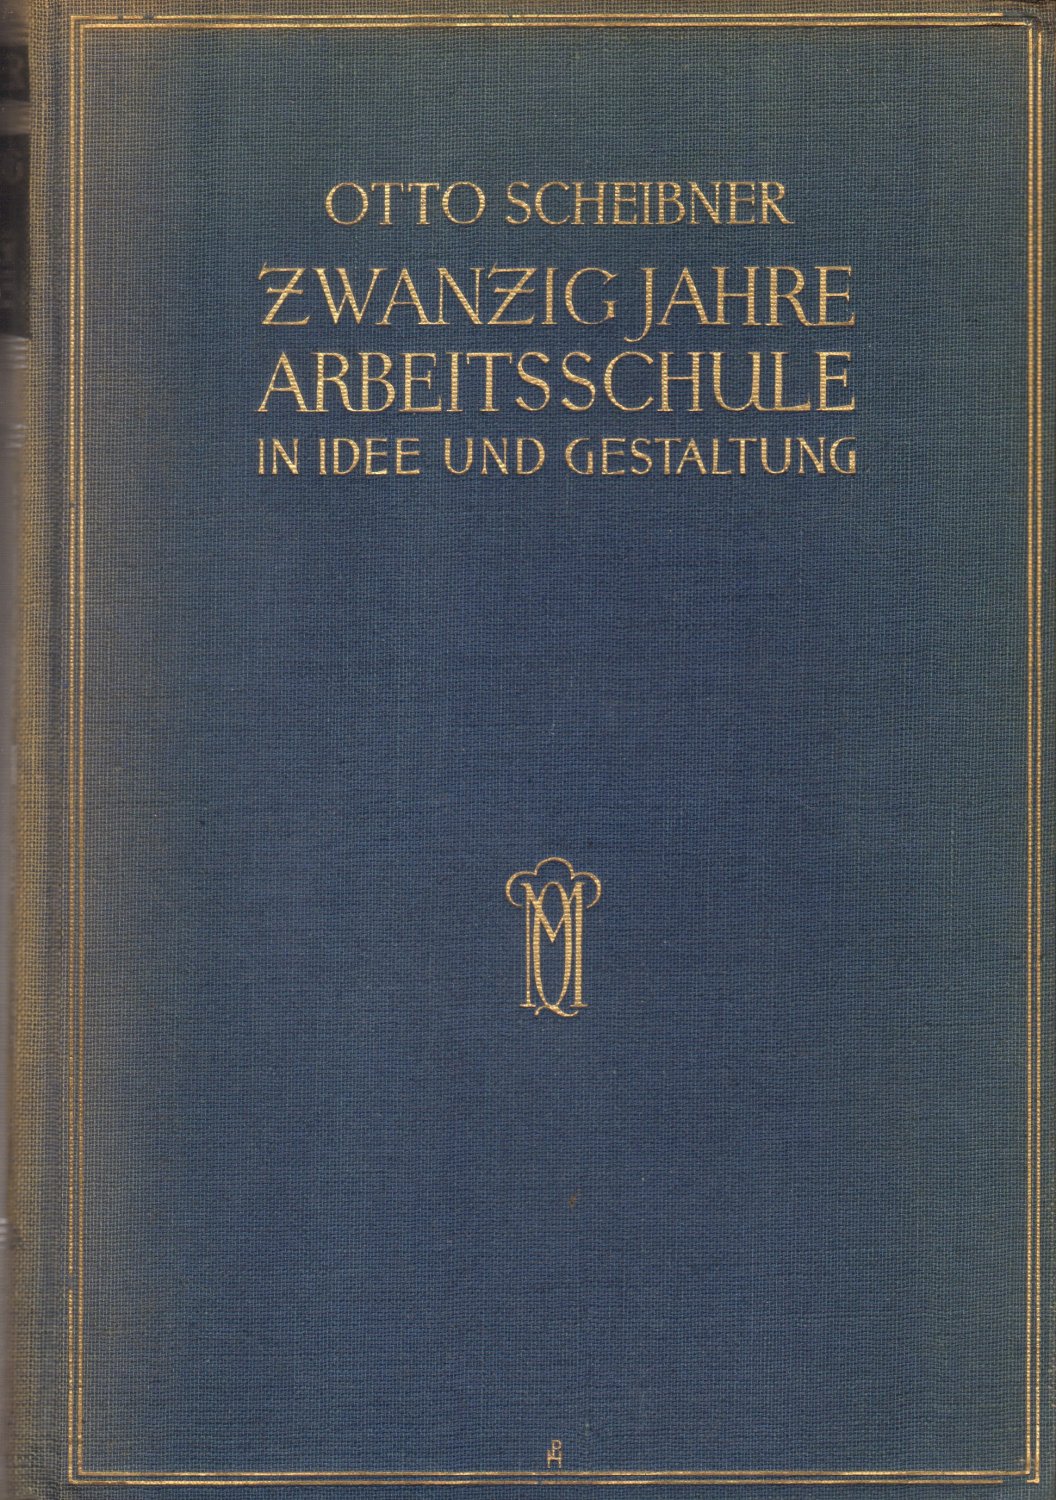 Buch von Otto Scheibner